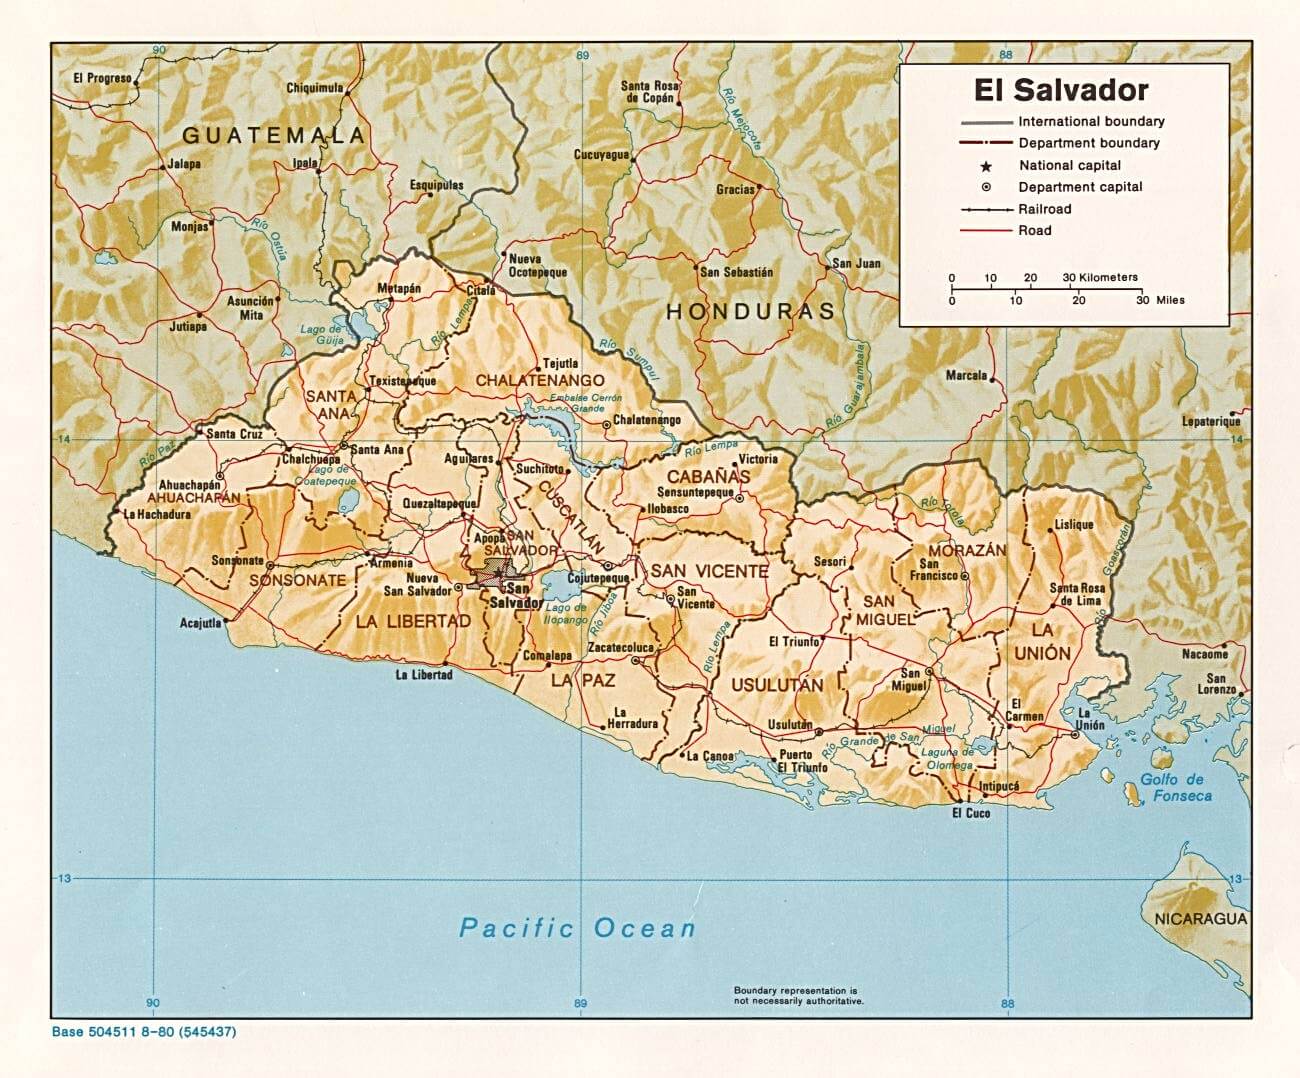 El Salvador Shaded Relief Map 1980